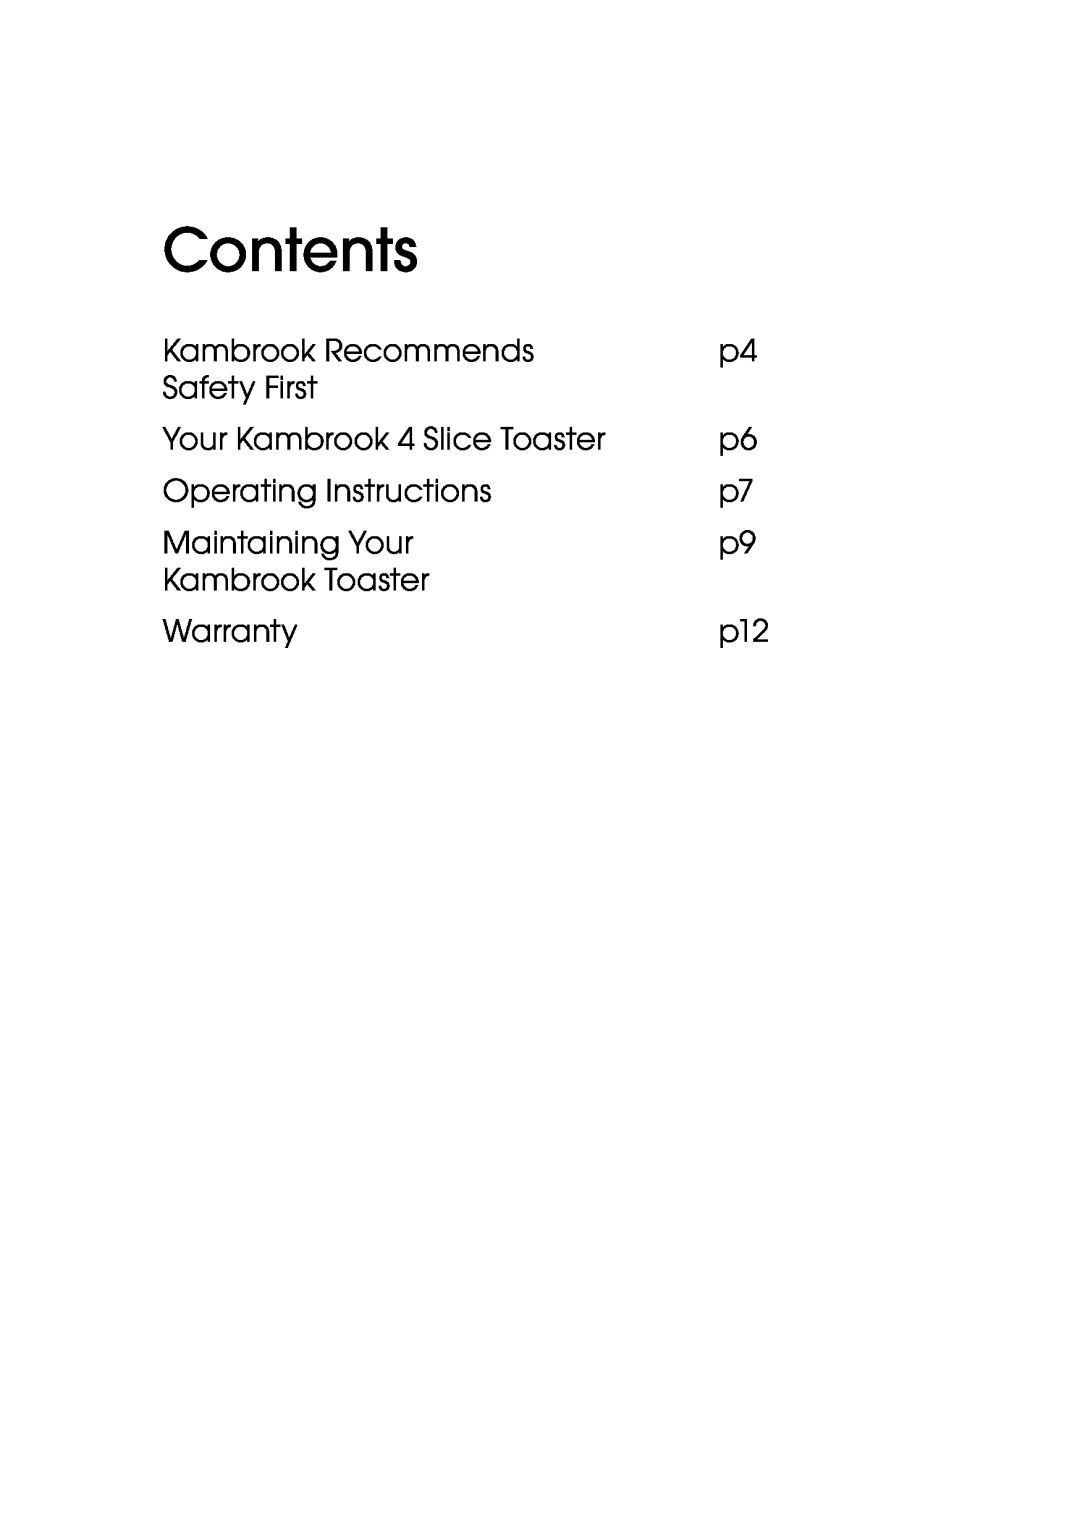 Kambrook KT420 manual Contents 